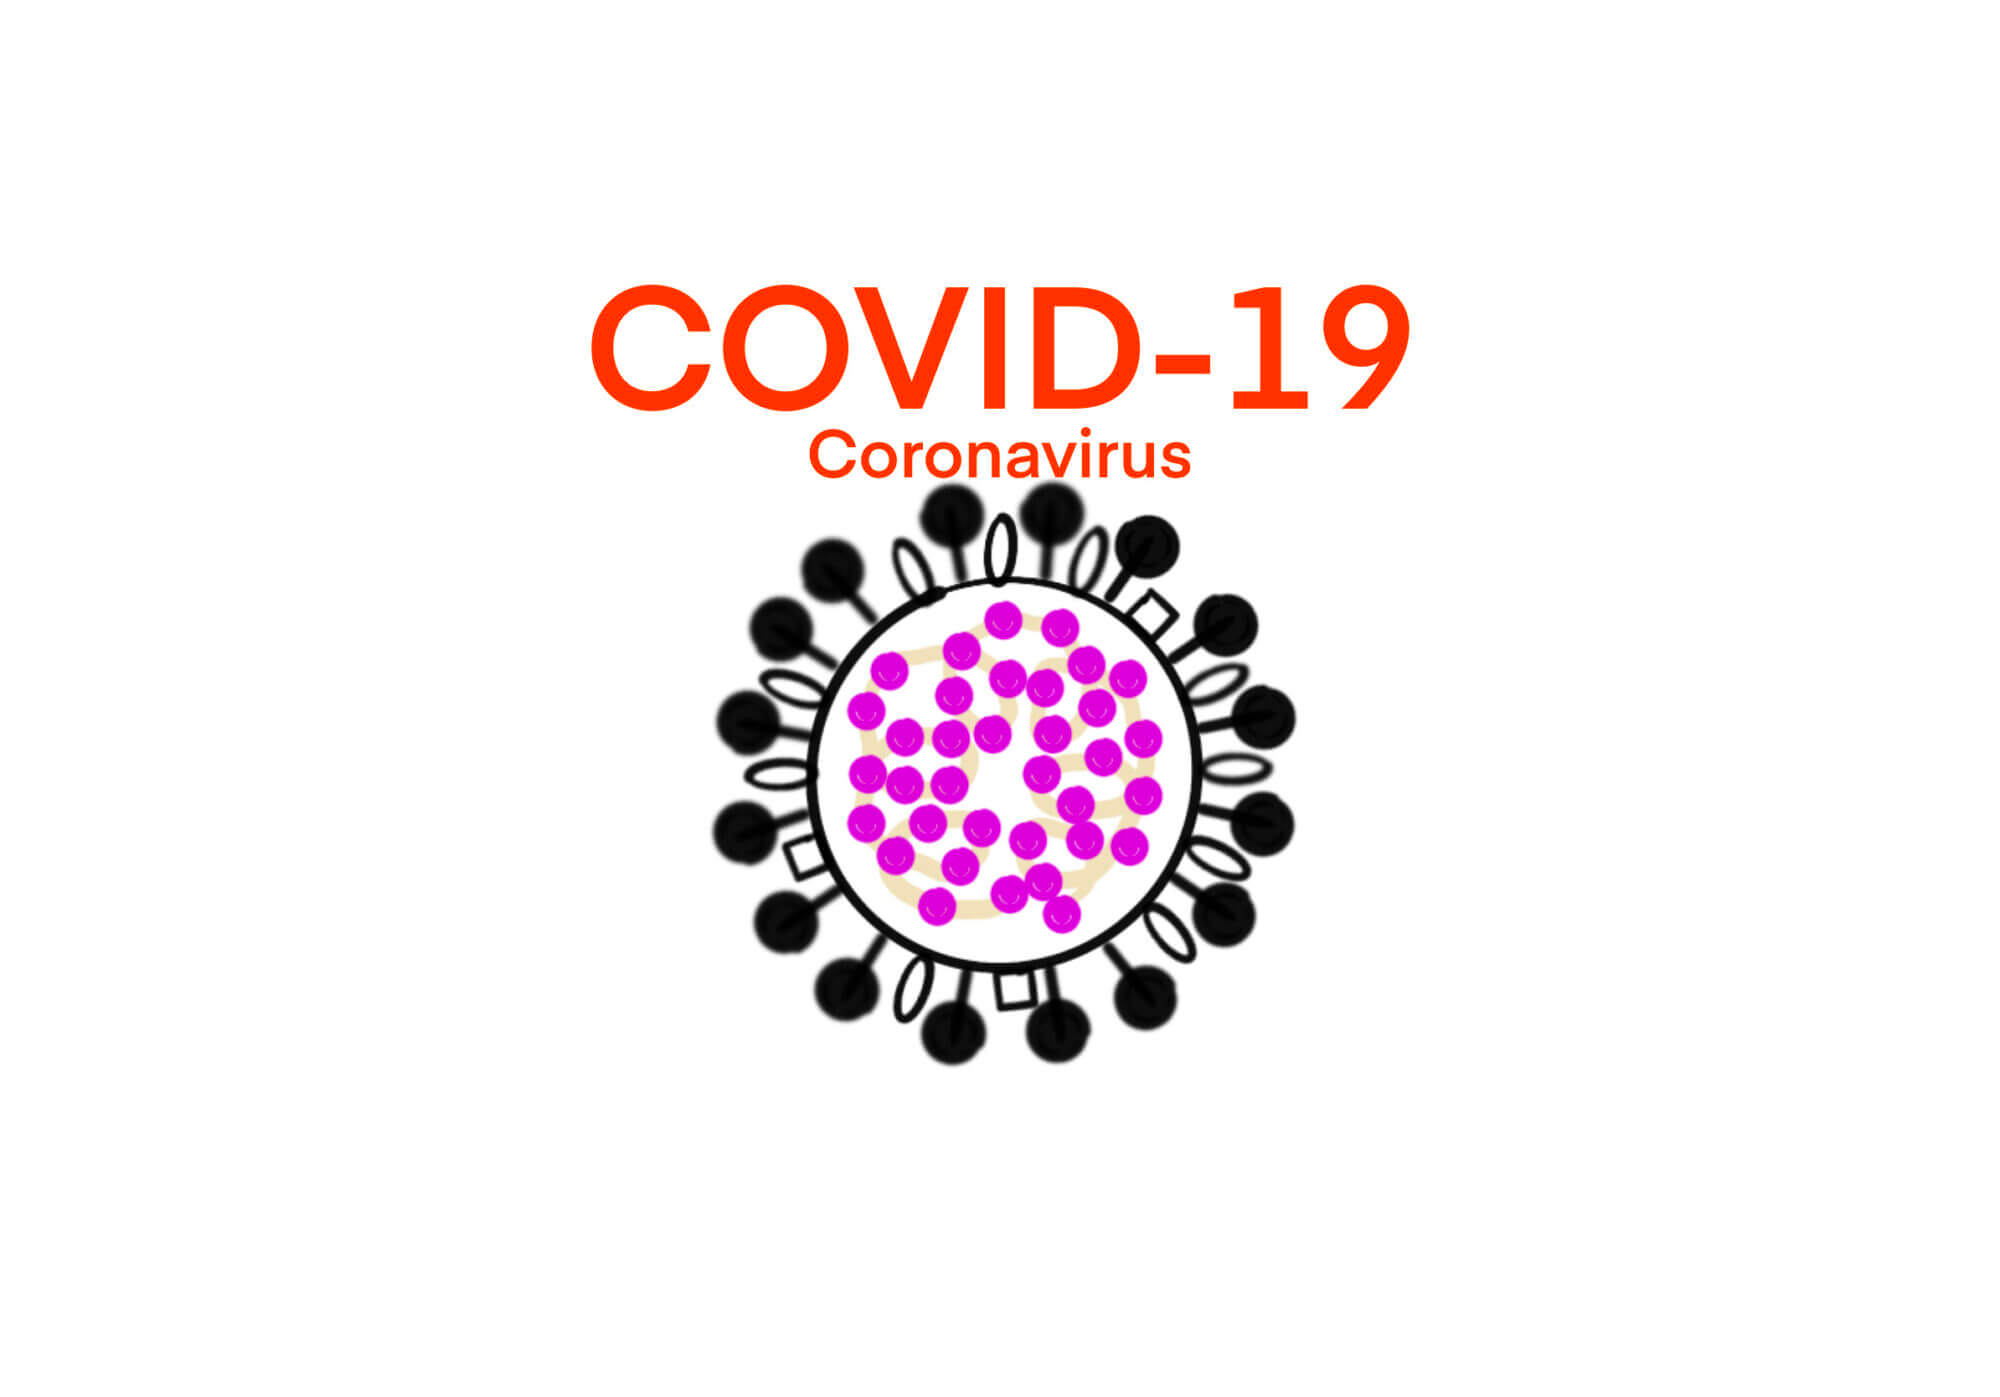 [Edu] Creative Biolabs Inc.が公開しているビデオから – COVID-19の原因ウイルスである新型コロナウイルス(SARS-CoV-2)の構造について学ぶ – ID16089 [2020/05/21]